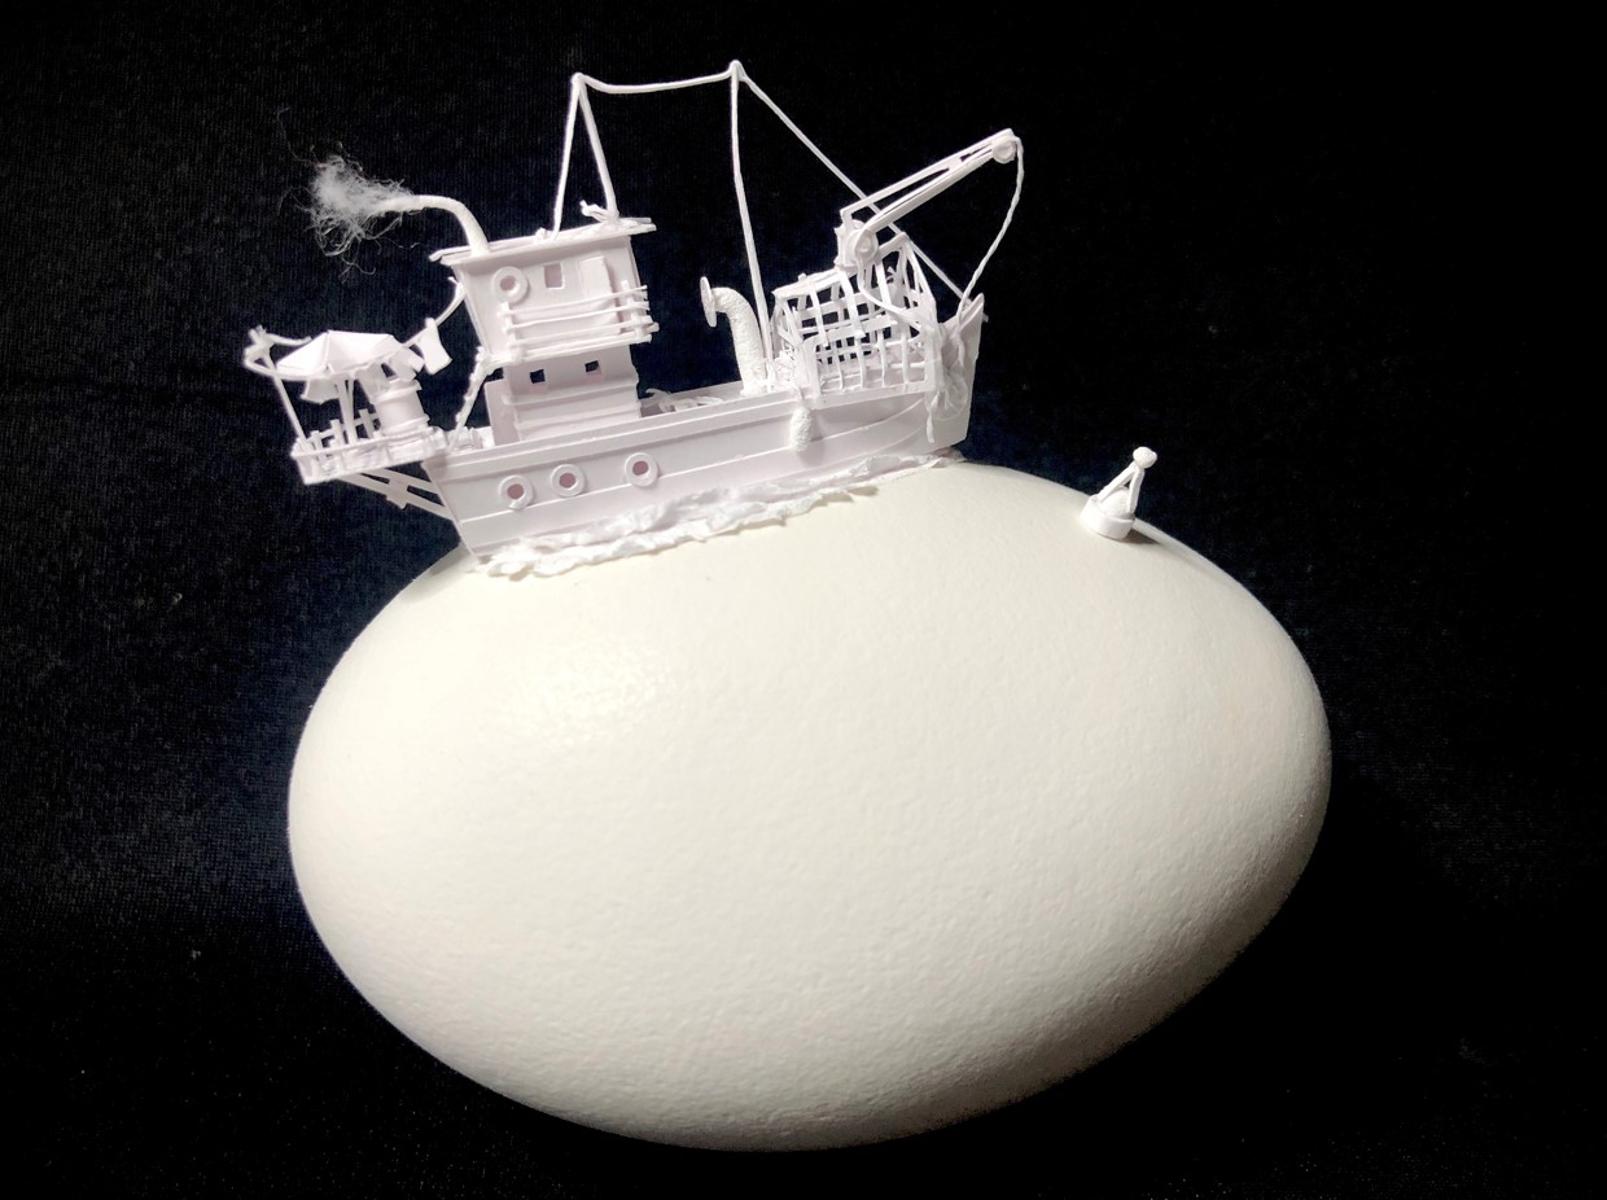 Künstler aus der Österreich, Frankreich und Deutschland zeigen eine unendliche Fülle künstlerischer Gestaltung des Objektes Ei, genauer gesagt, dessen Schale.